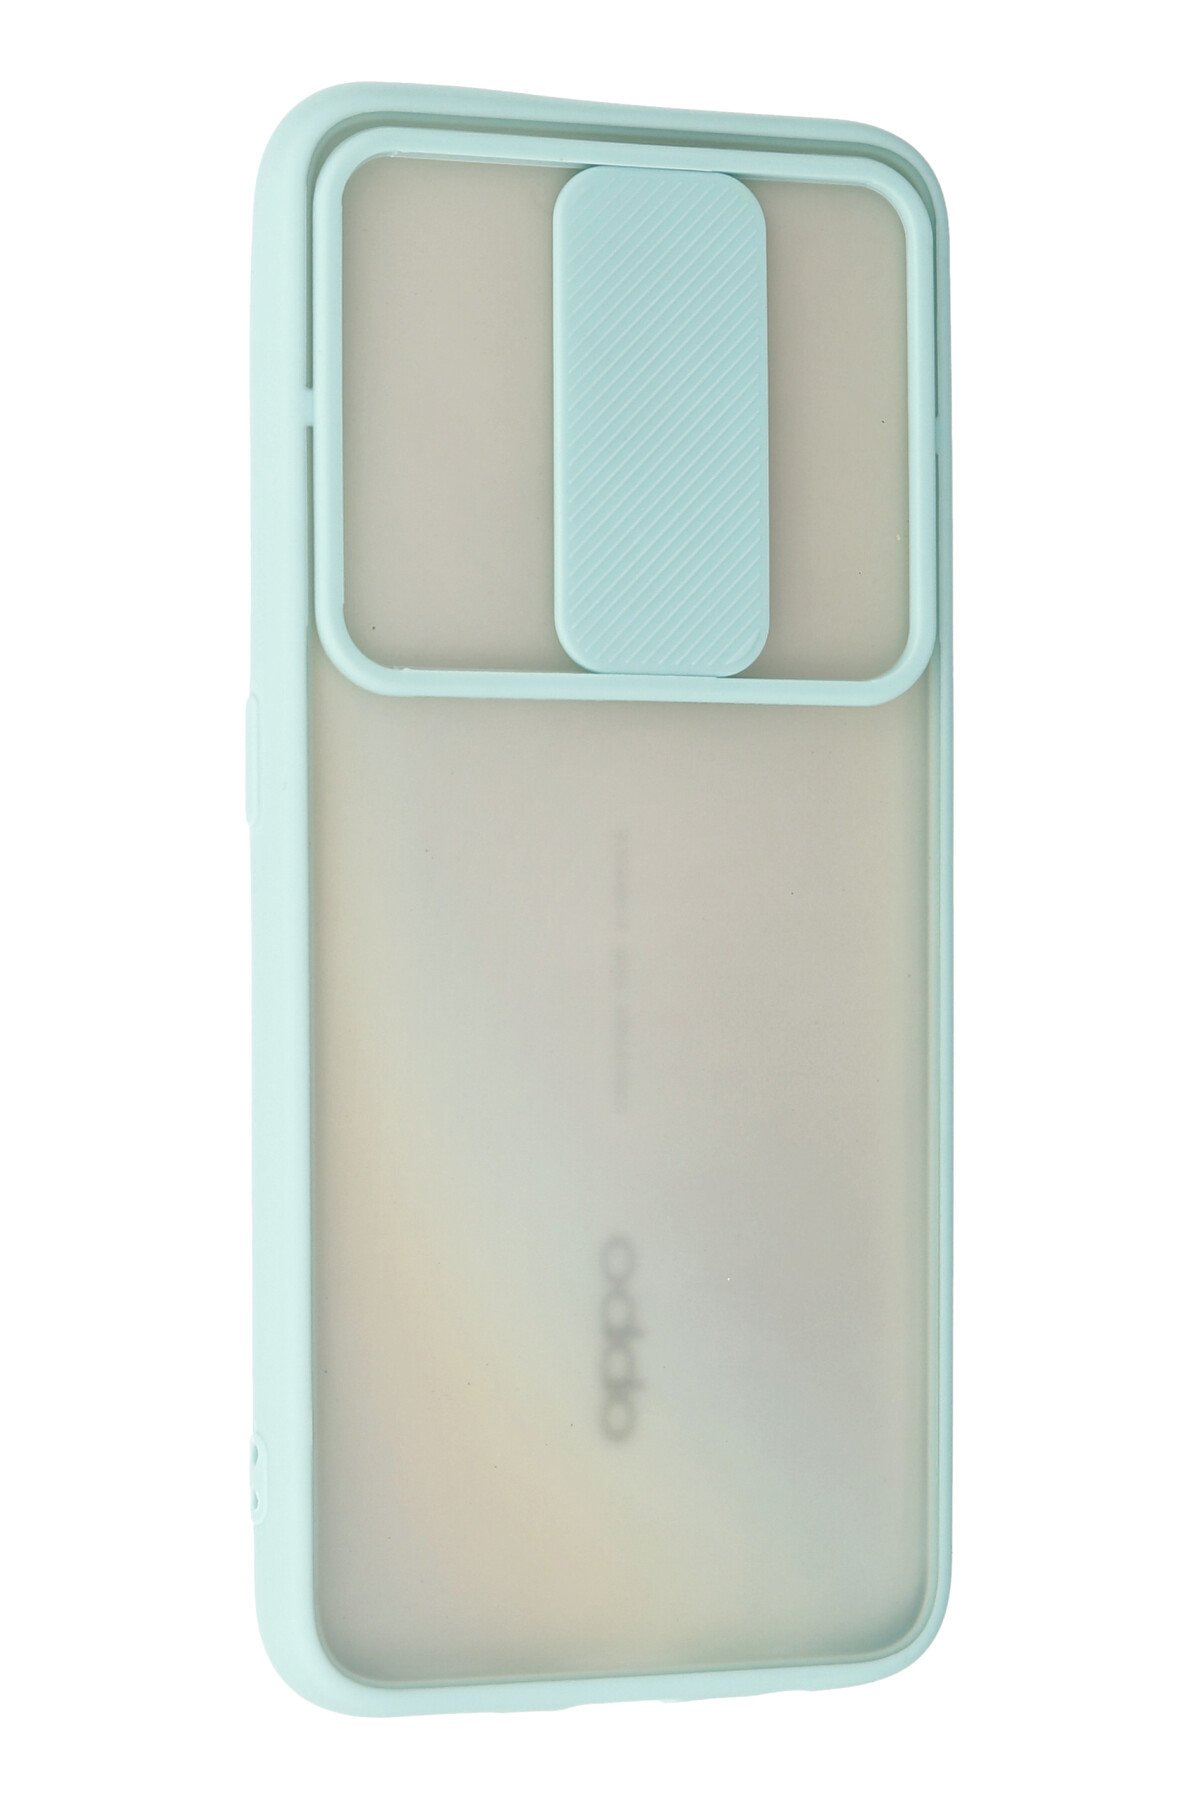 Newface Oppo A9 2020 Kılıf Trend S Plus Kapaklı Kılıf - Kırmızı